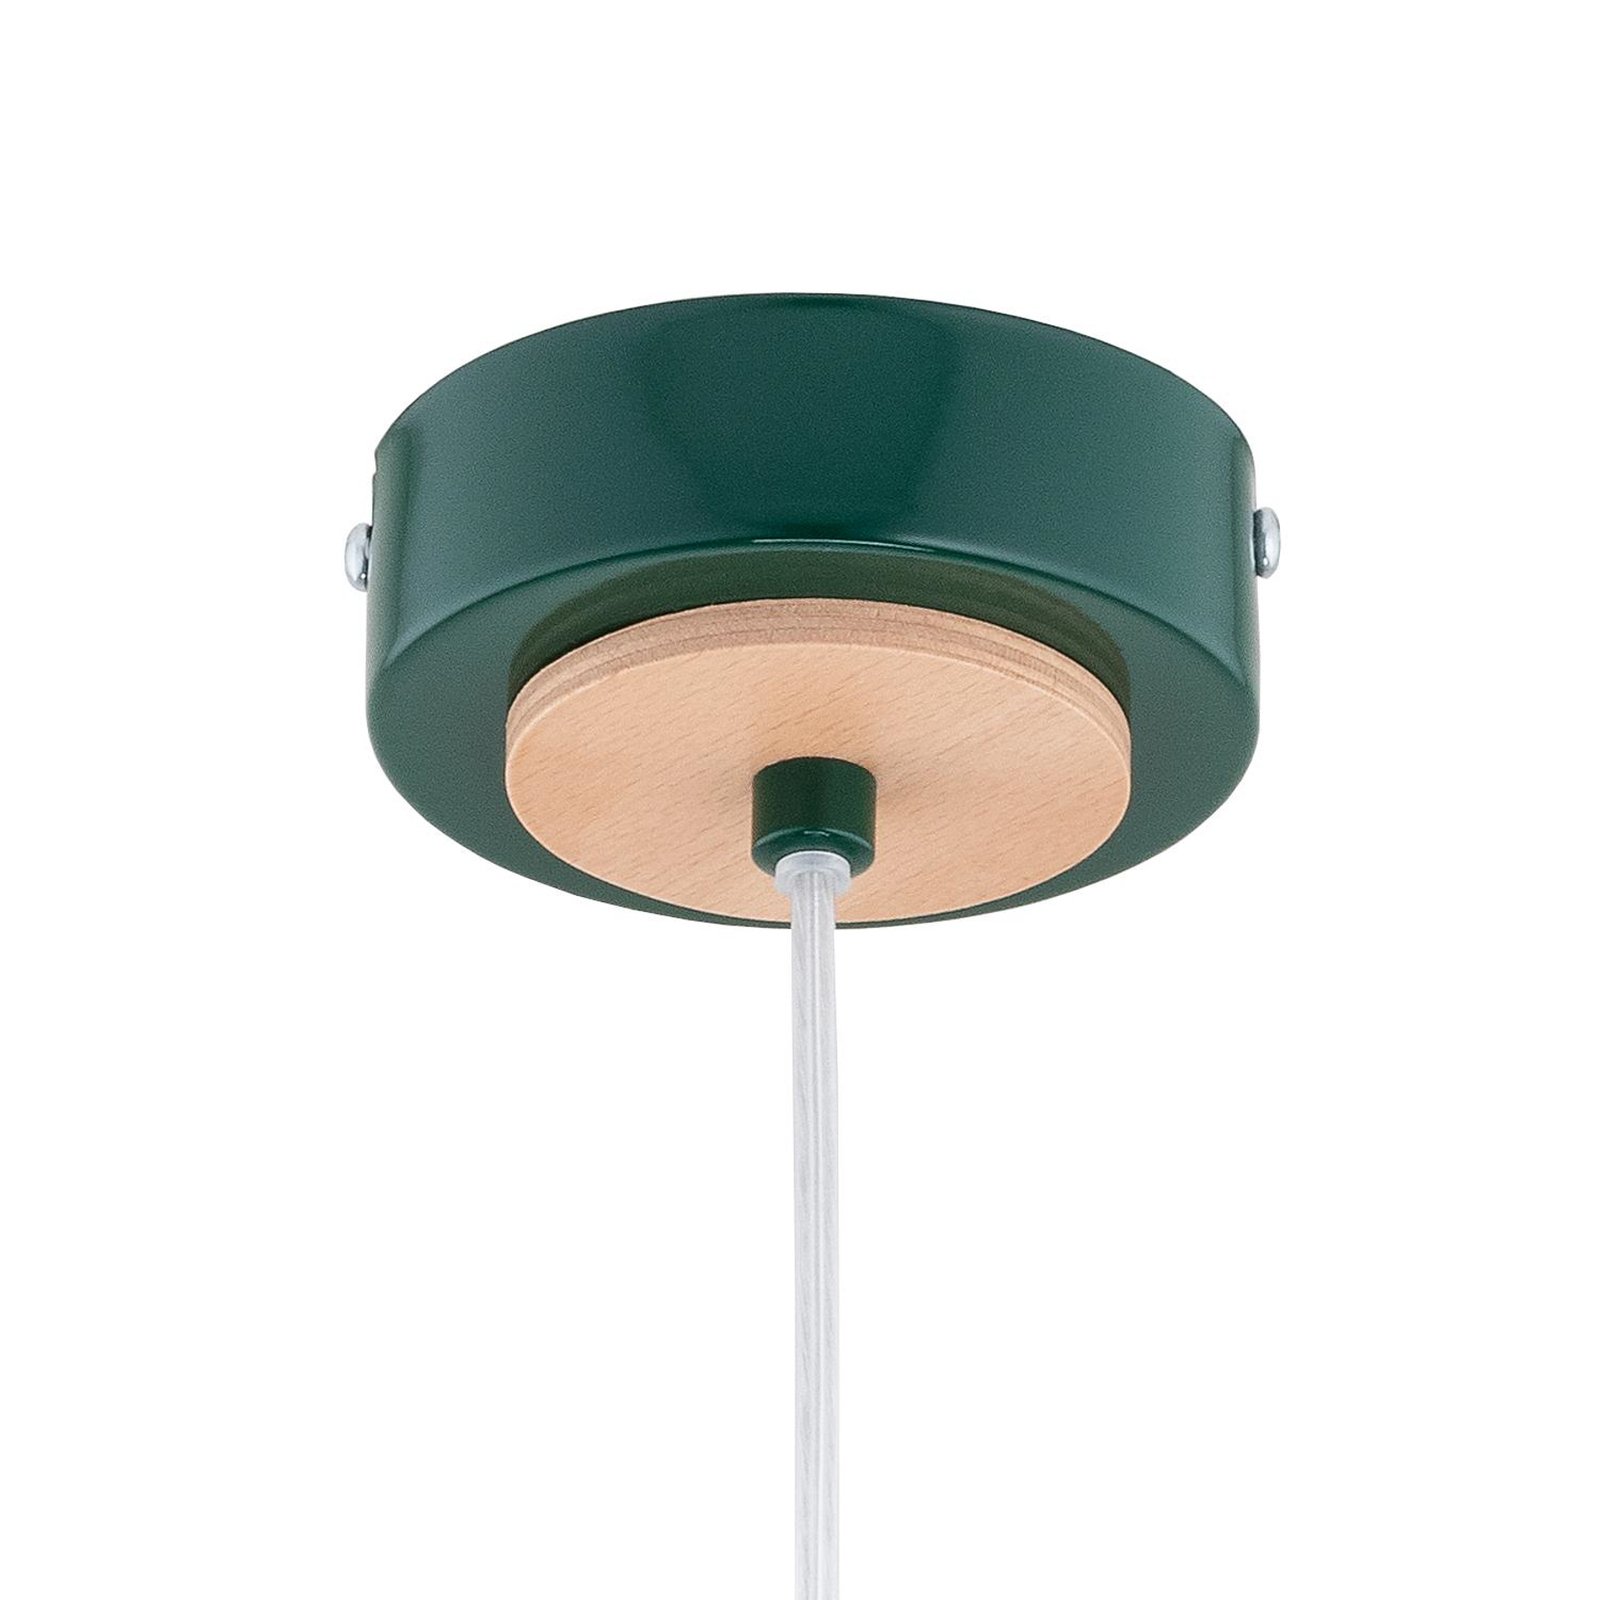 Lampă suspendată Lorien, verde închis, Ø 23 cm, metal, lemn